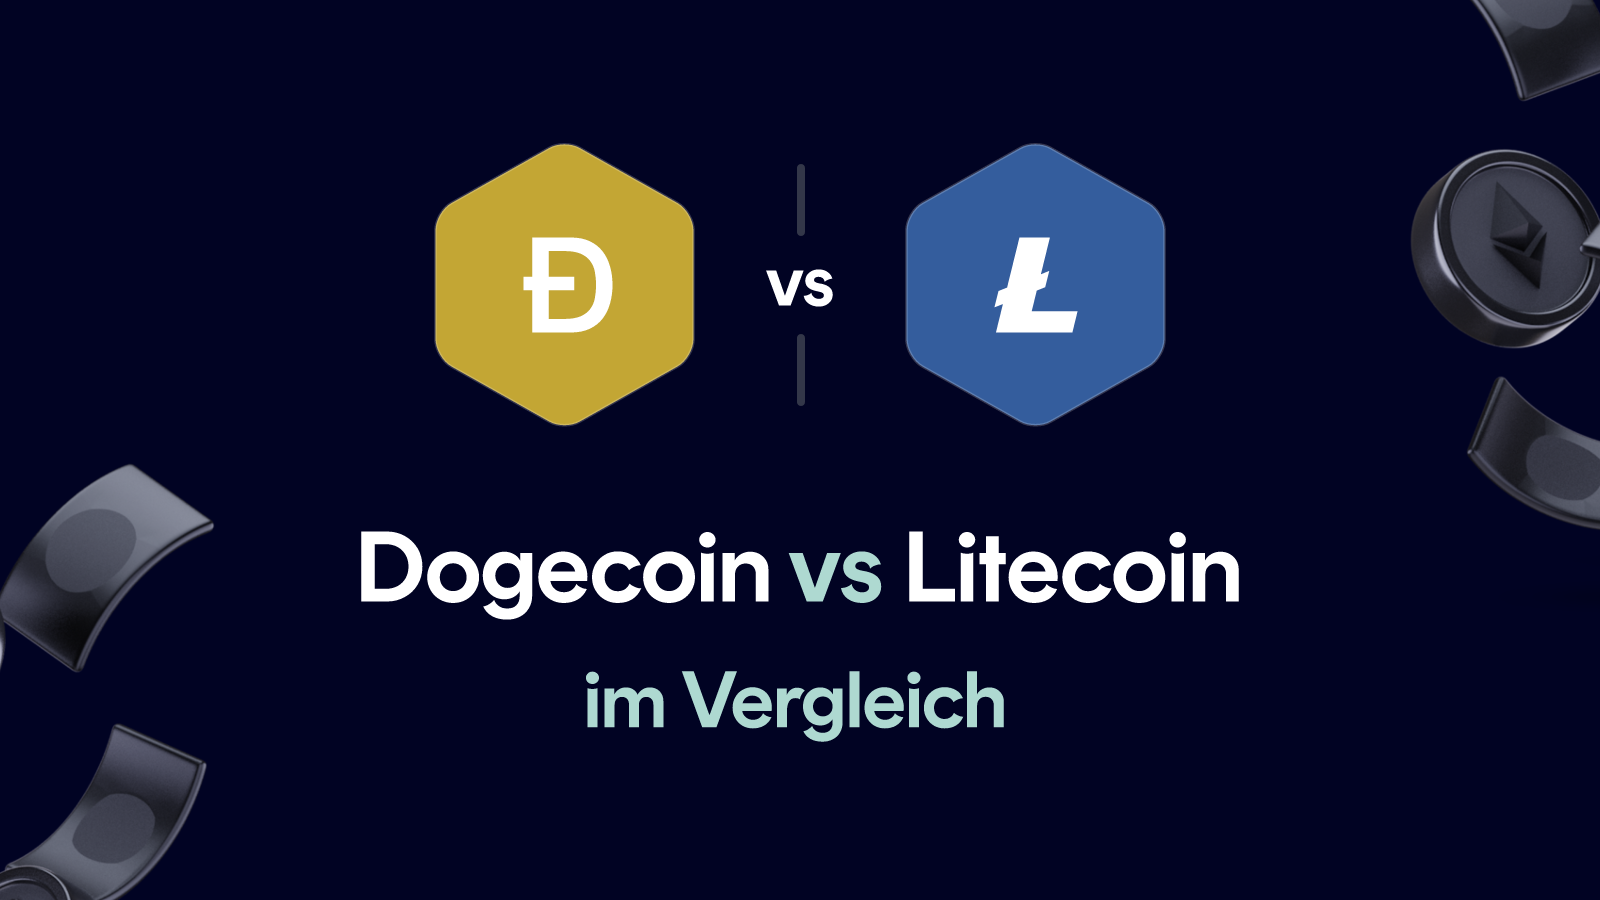 Dogecoin vs Litecoin